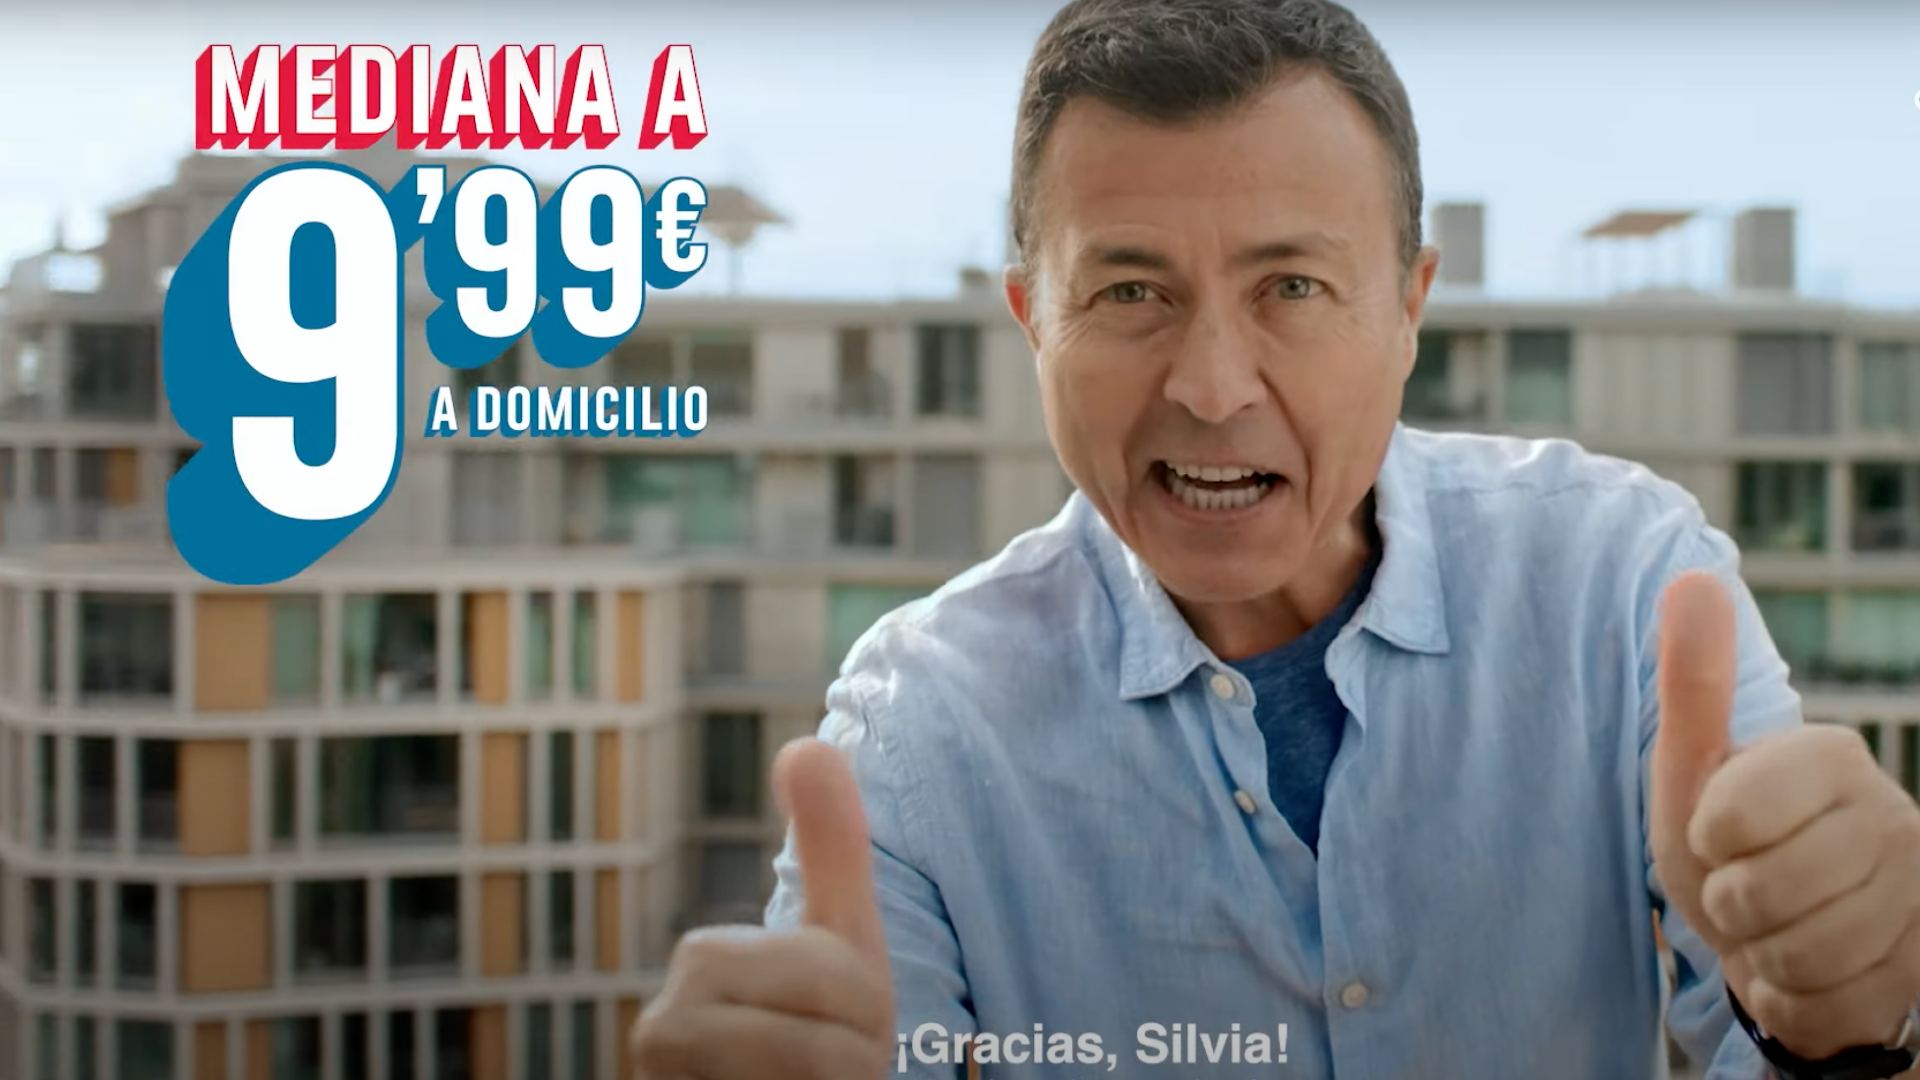 Imagen del spot en la que aparece el presentador de Antena 3 Manu Sánchez junto al precio de la pizza dando las gracias a Silvia.